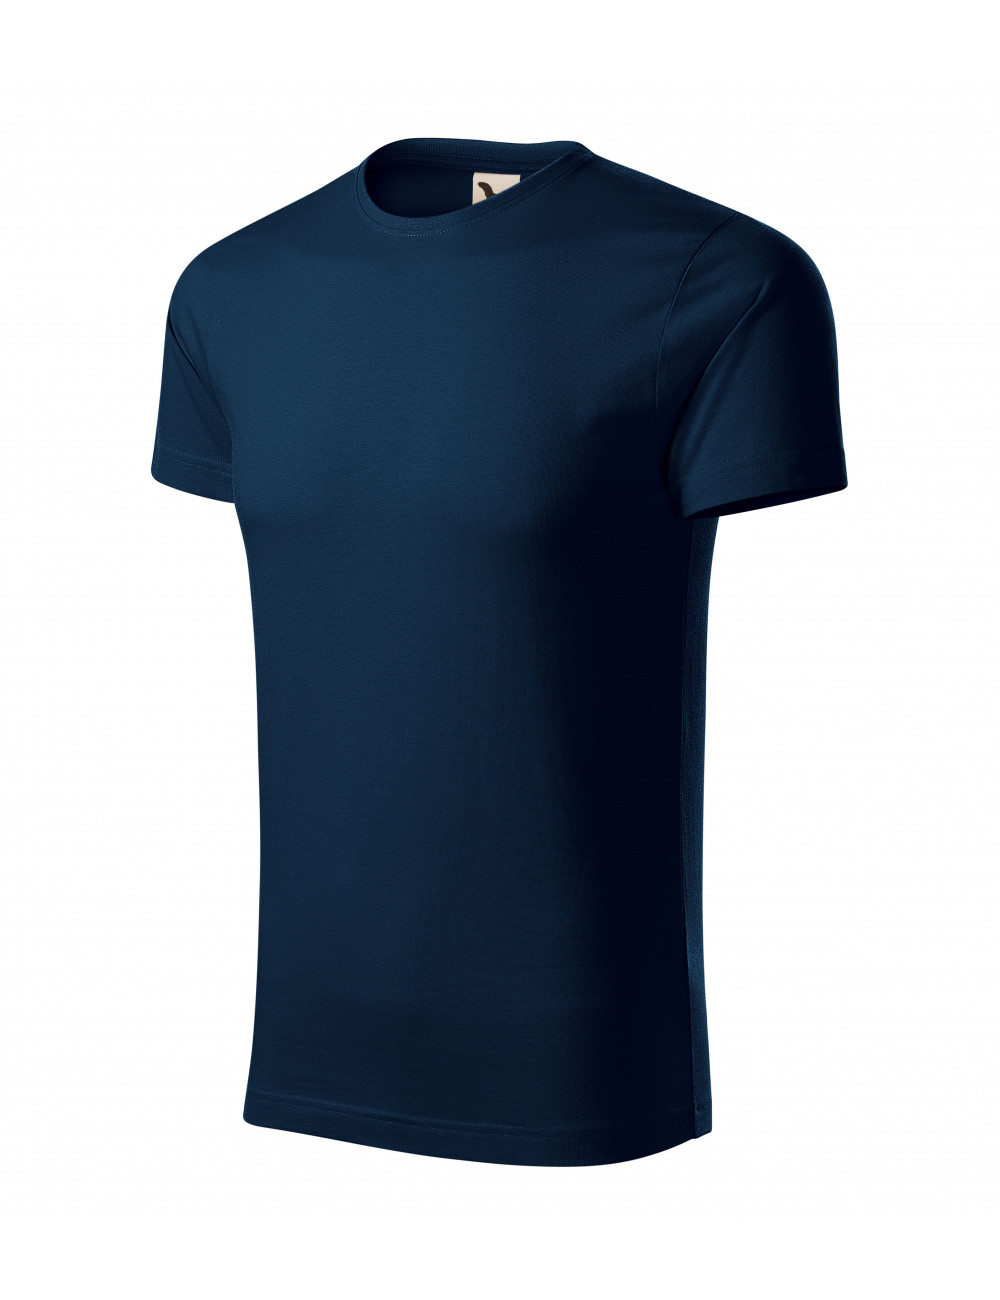 Men`s t-shirt origin 171 navy blue Adler Malfini